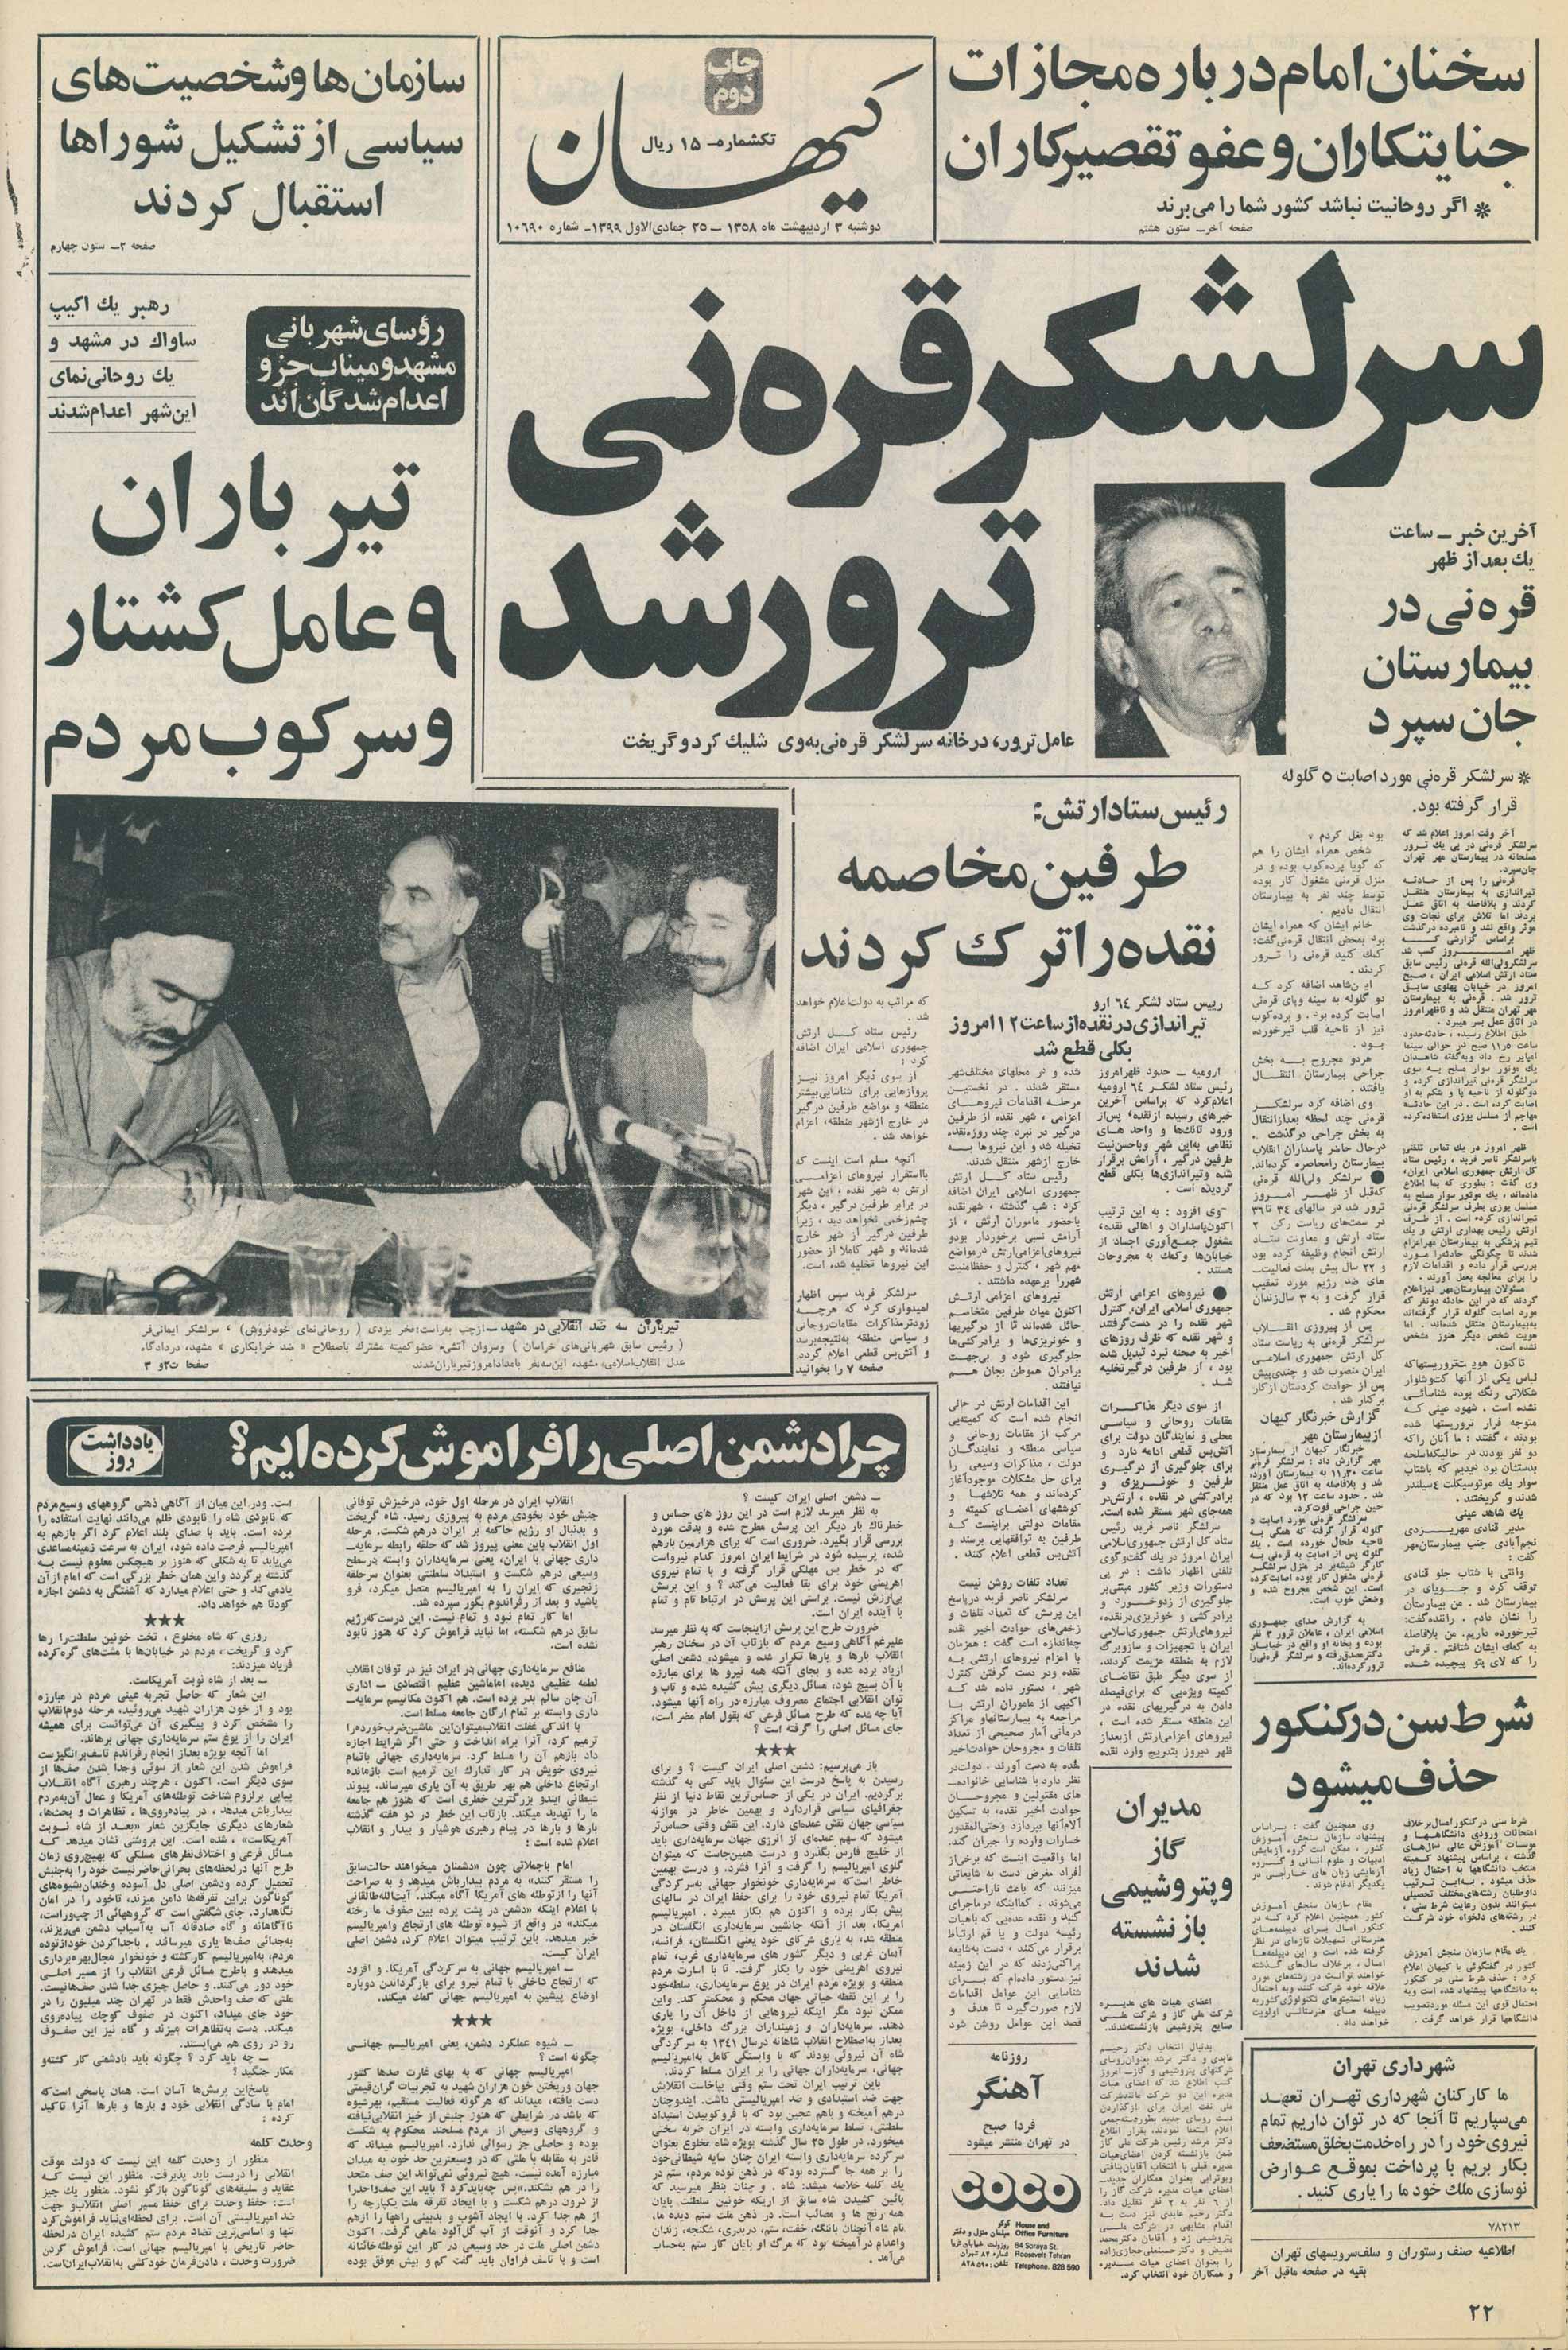  روزنامه کیهان 3 اردیبهشت ۱۳۵۸
